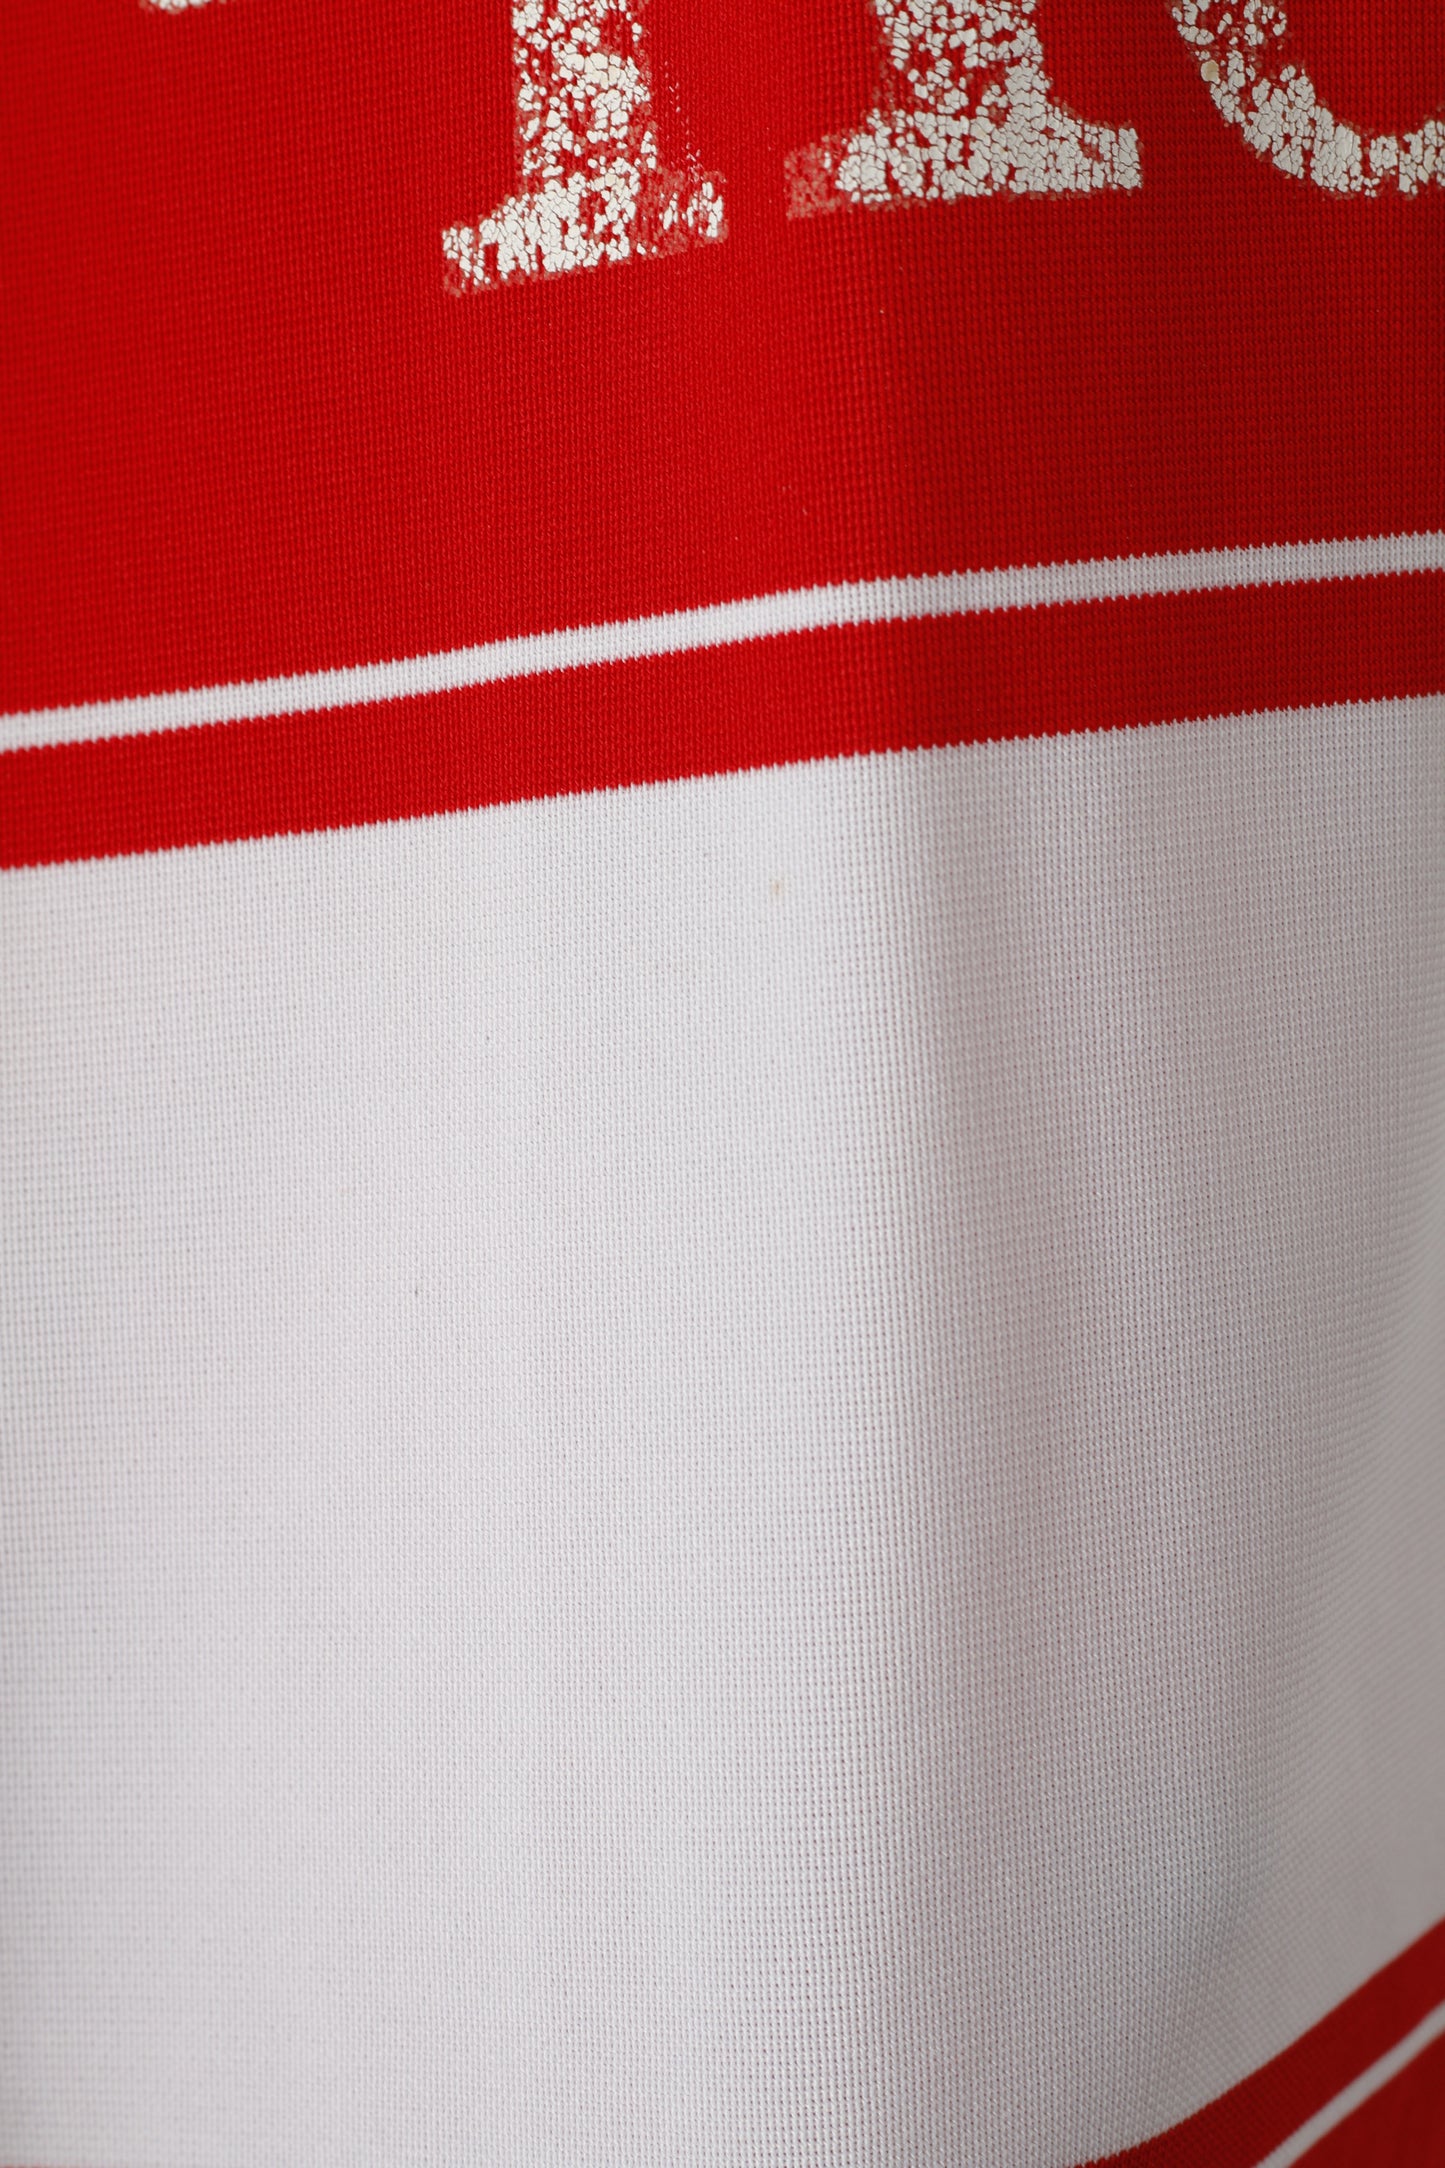 Maglia Adidas Bayern Monaco Ragazzi 16 Età 176 Maglia rossa della squadra di calcio tedesca